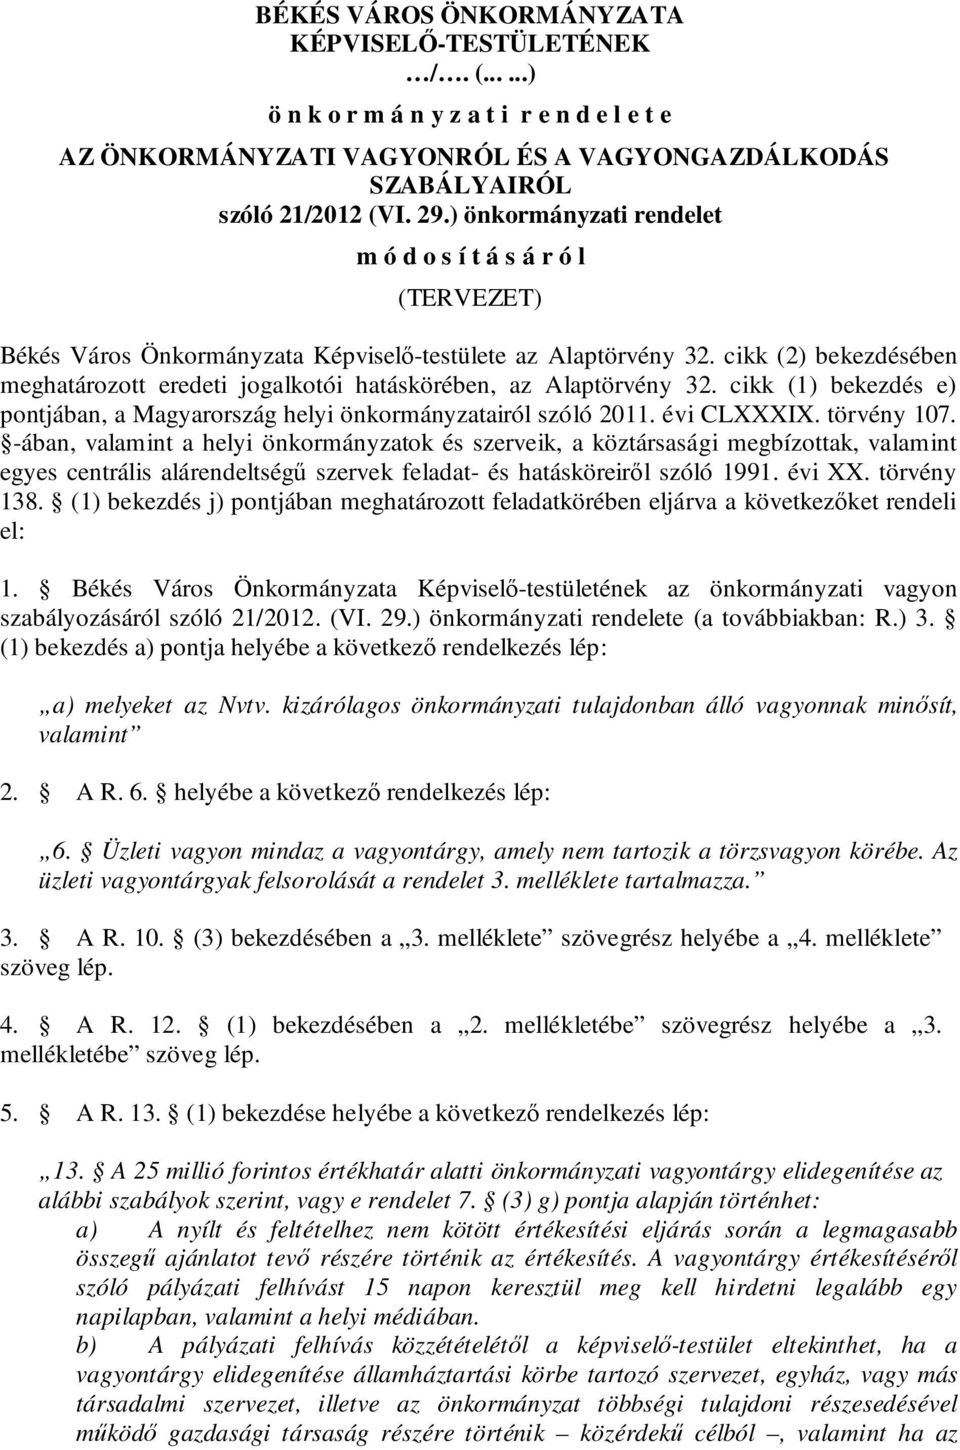 cikk (2) bekezdésében meghatározott eredeti jogalkotói hatáskörében, az Alaptörvény 32. cikk (1) bekezdés e) pontjában, a Magyarország helyi önkormányzatairól szóló 2011. évi CLXXXIX. törvény 107.